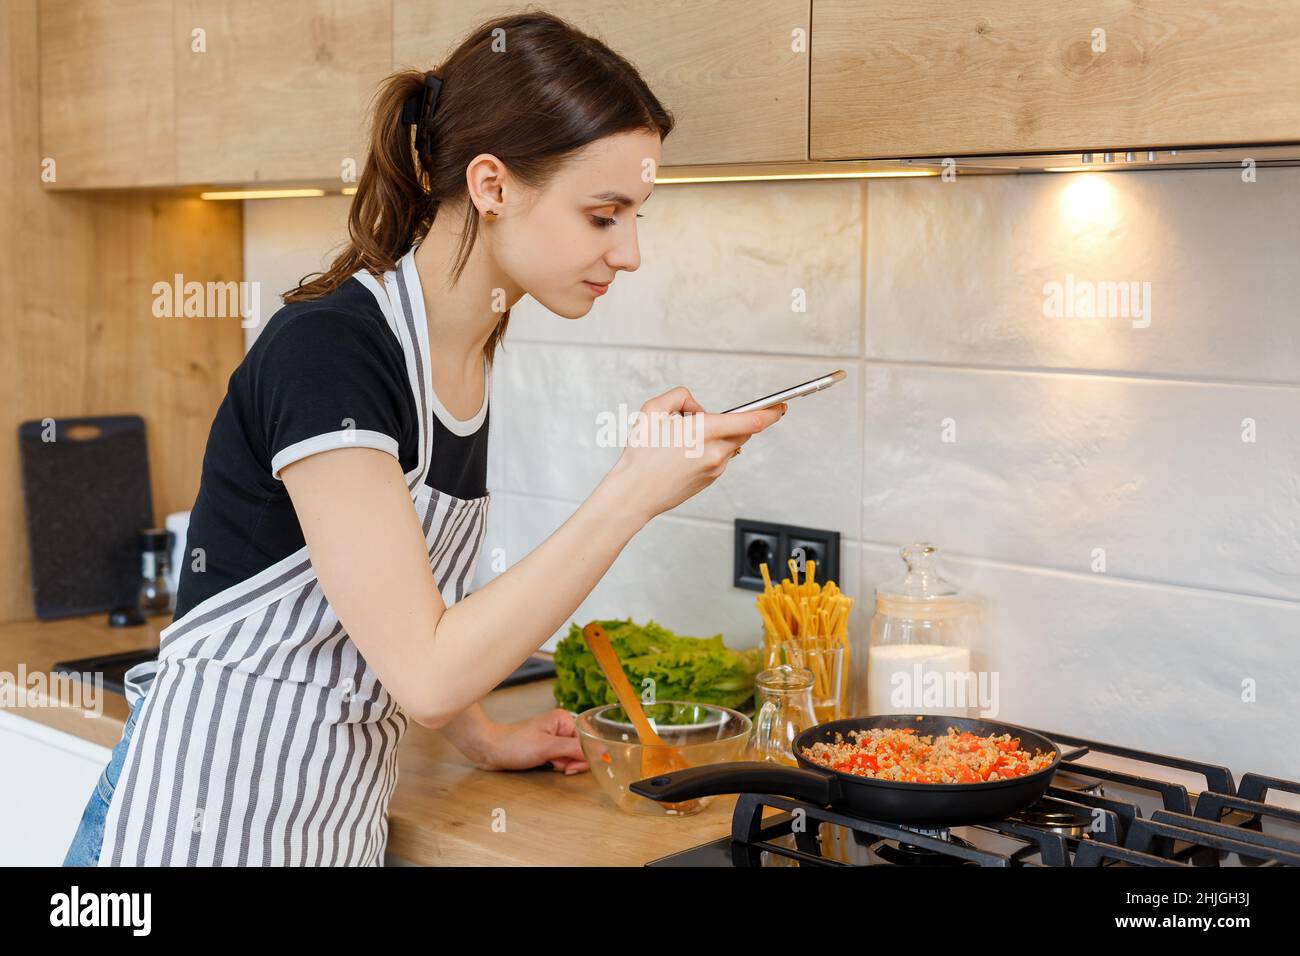 Junge Bloggerin im Vorfeld, die mit dem Telefon fotografiert, während sie in der Küche kocht. Zubereitung der Mahlzeit mit einer Pfanne auf dem Gasherd. Konzept des häuslichen Lebensstils, Hausfrau Freizeit und kulinarisches Bloggen. Stockfoto